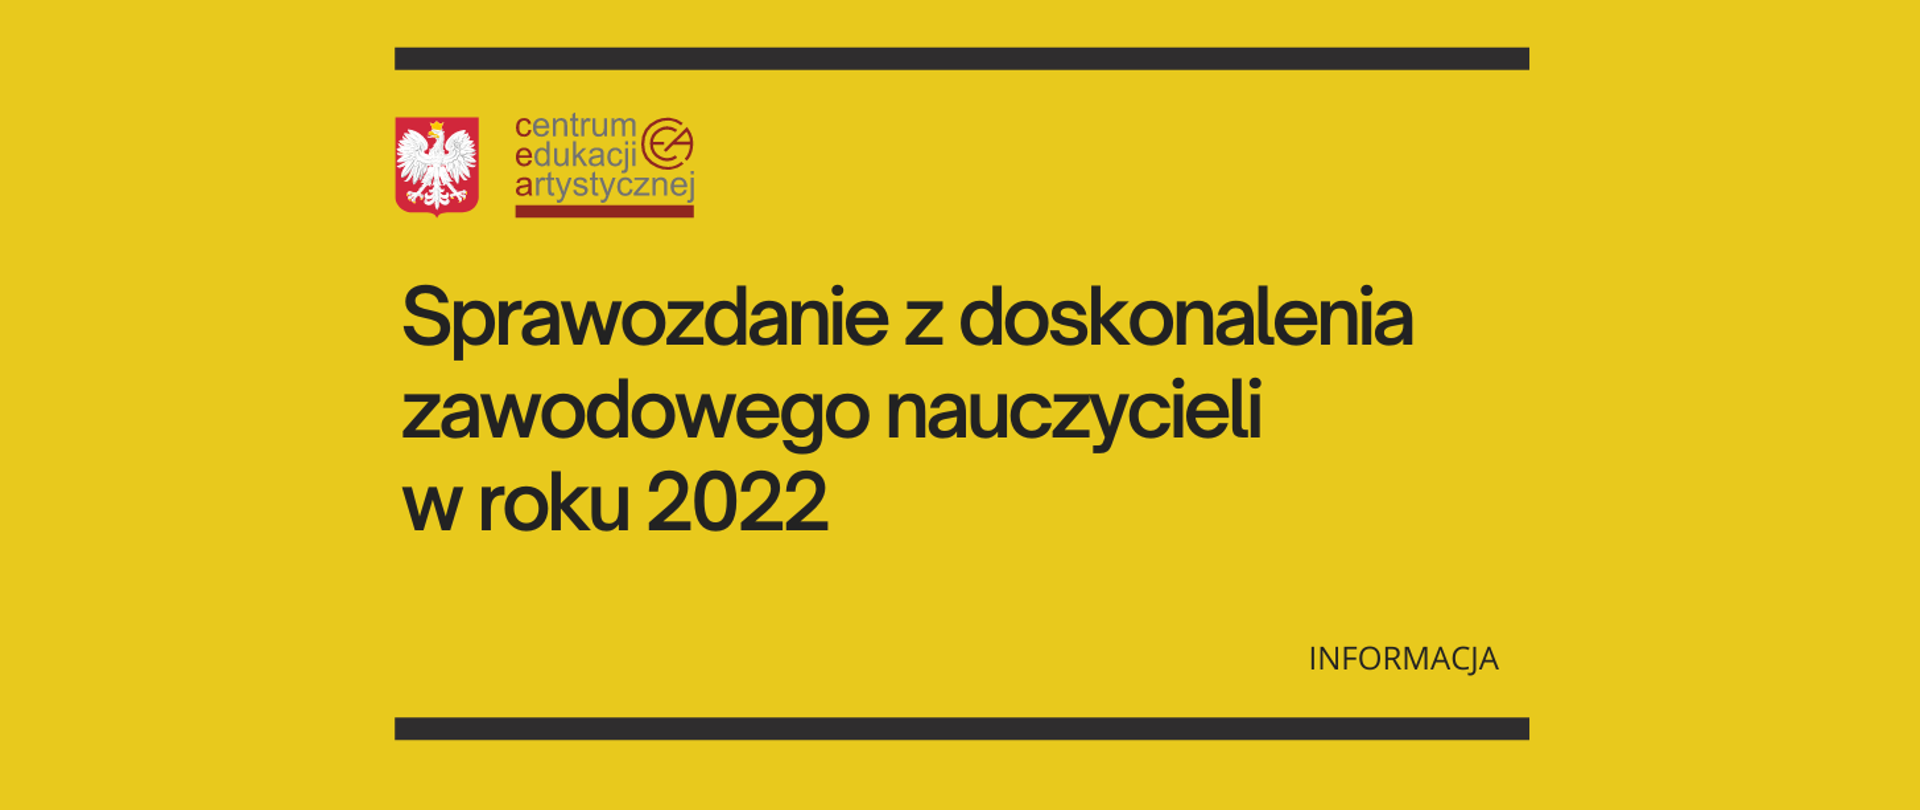 Żółta grafika z tekstem "Sprawozdanie z doskonalenia zawodowego nauczycieli w roku 2022 - informacja" i logo z orzełkiem